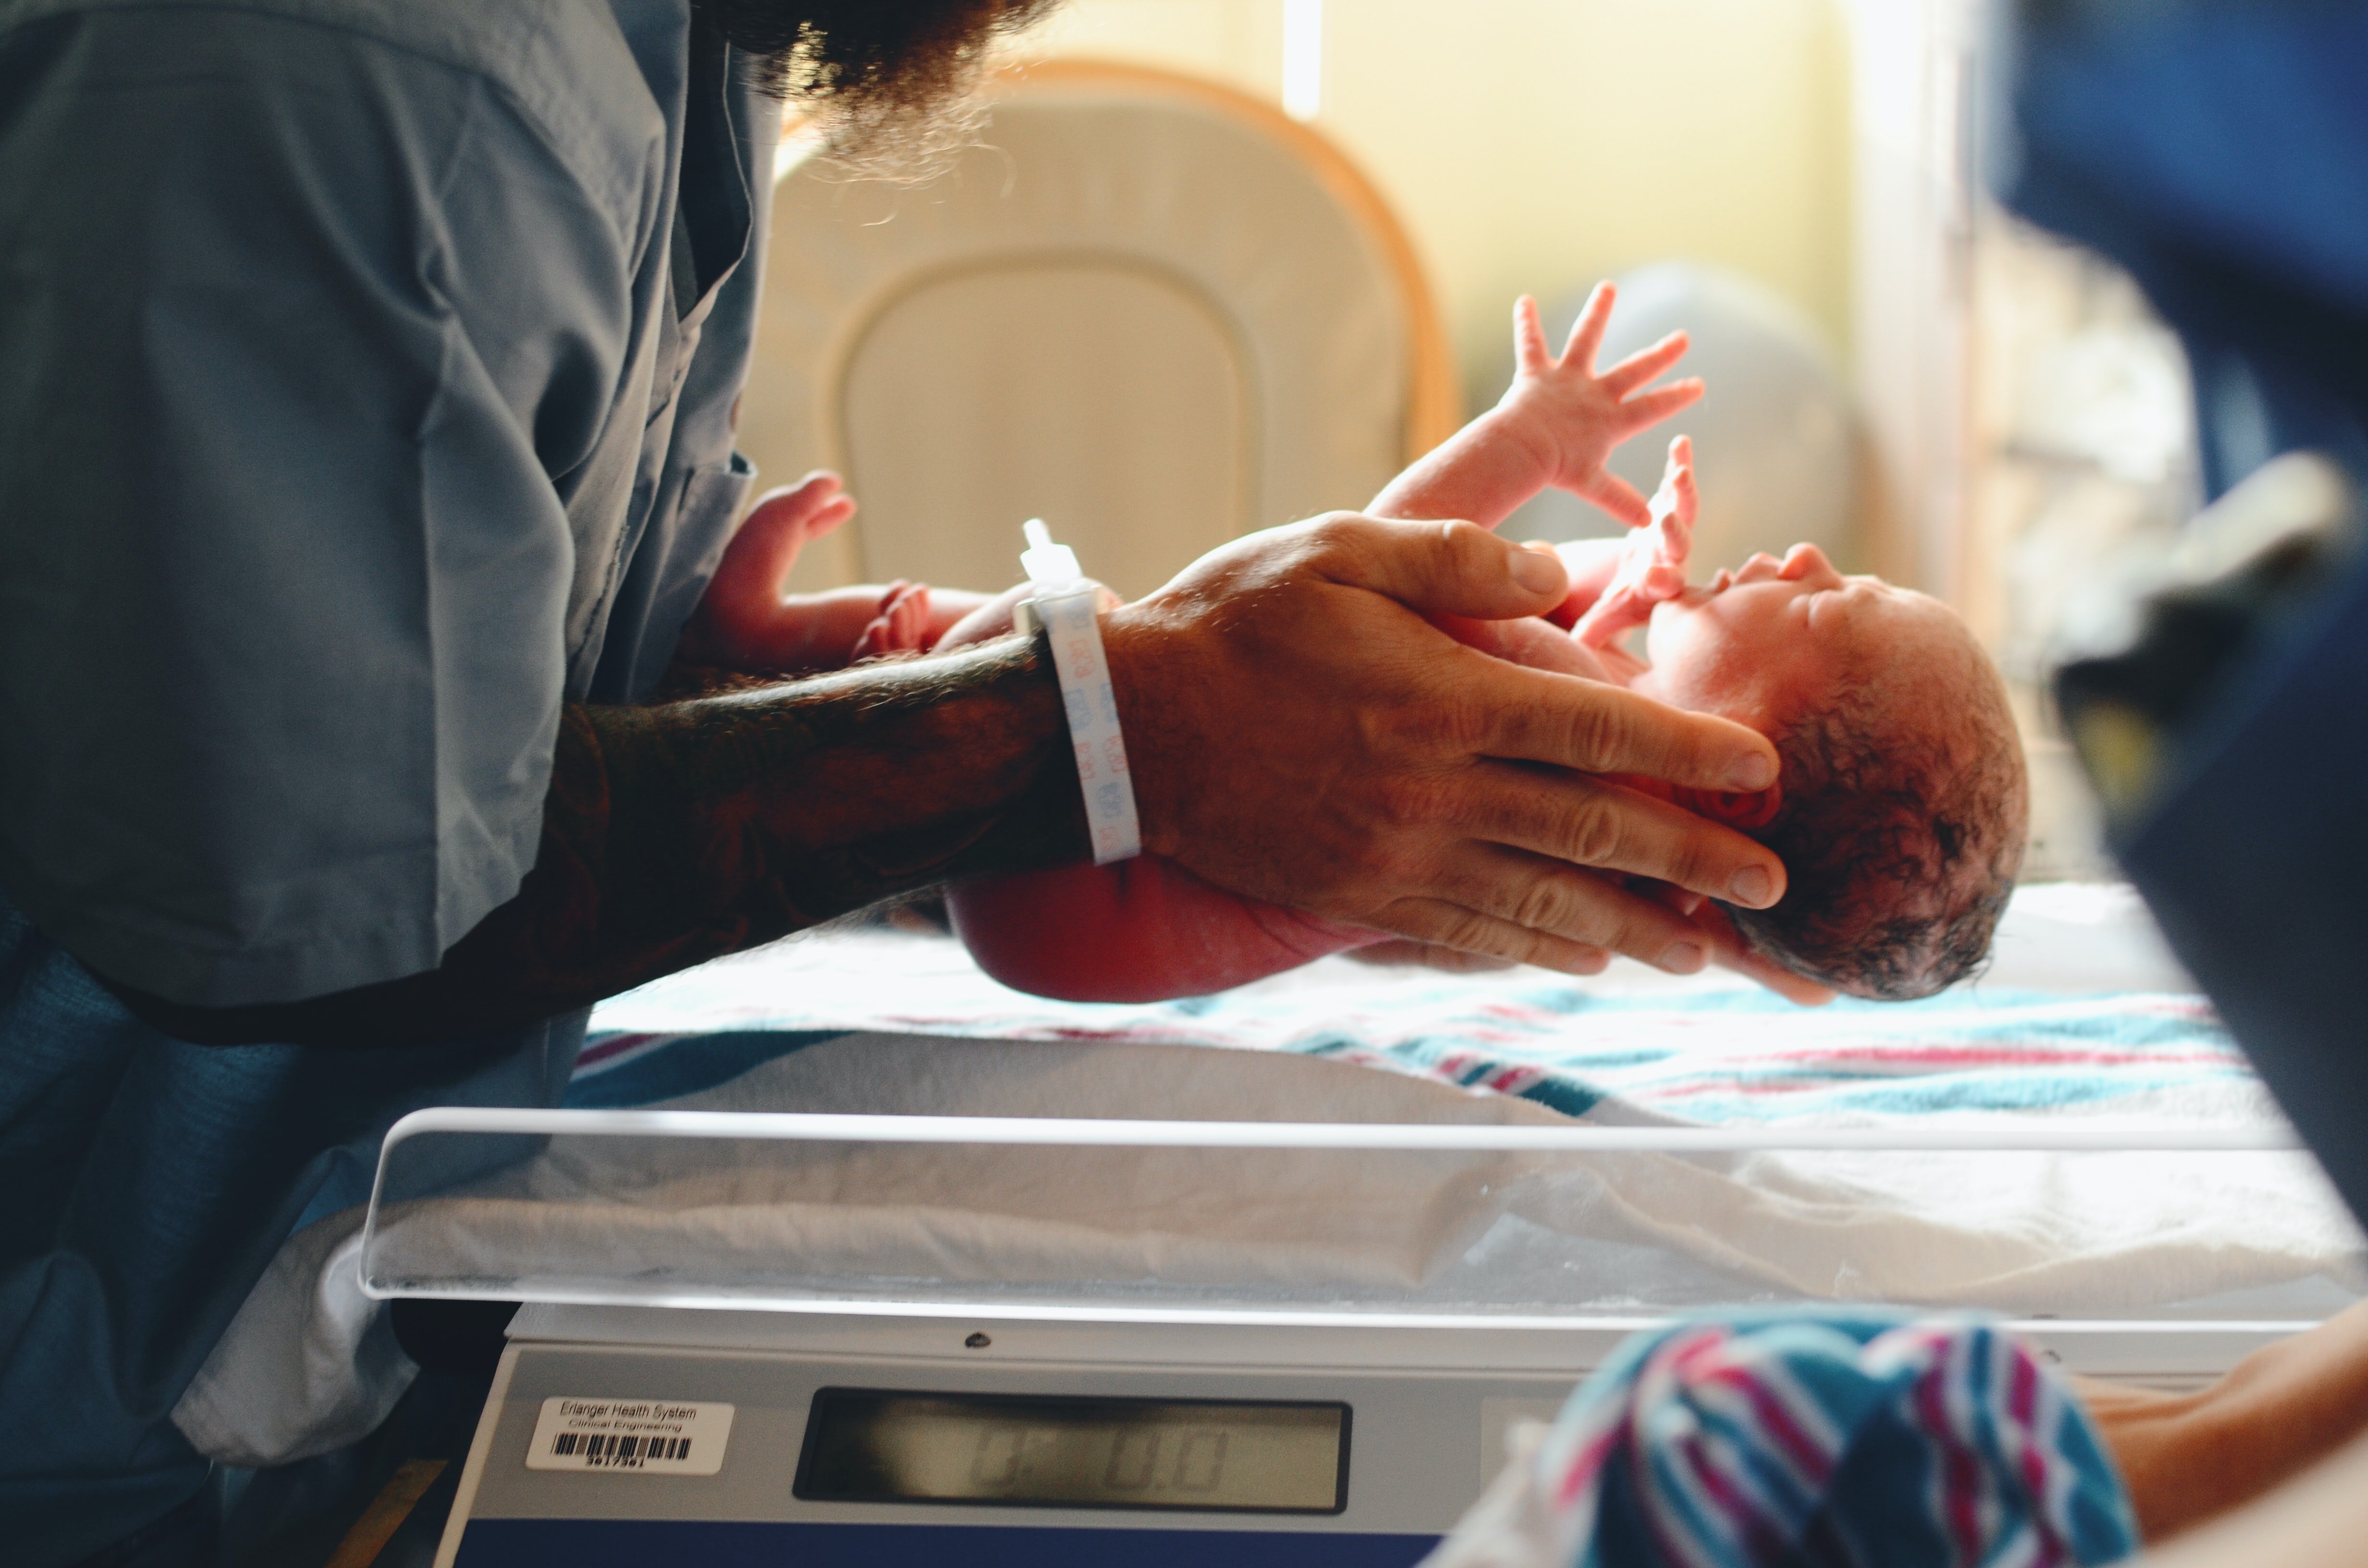 Dr. Carter teilte Silvia mit, dass ihr Baby auf die Neugeborenen-Intensivstation gebracht wurde | Quelle: Unsplash